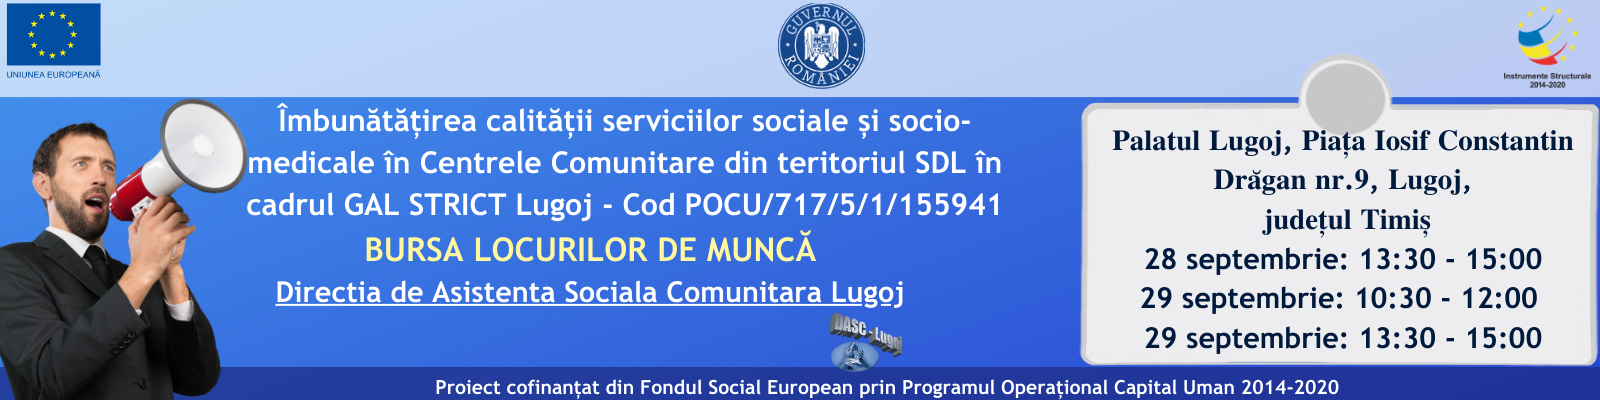 Directia de Asistenta Sociala Comunitara Lugoj